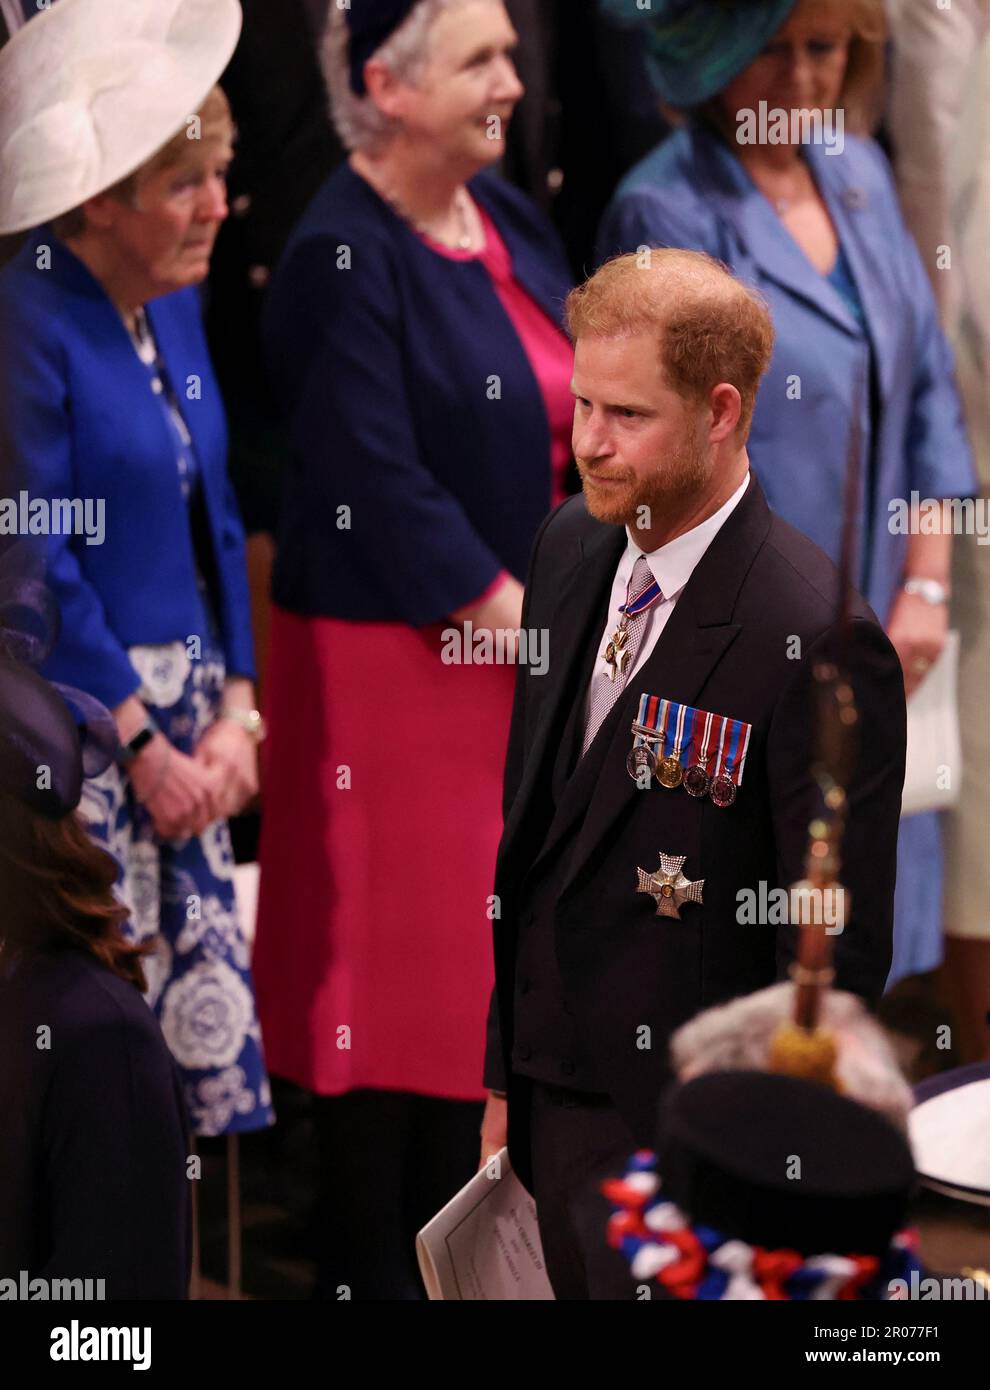 Der Herzog von Sussex nach der Krönung von König Karl III. Und Königin Camilla in Westminster Abbey, London. Foto: Samstag, 6. Mai 2023. Stockfoto